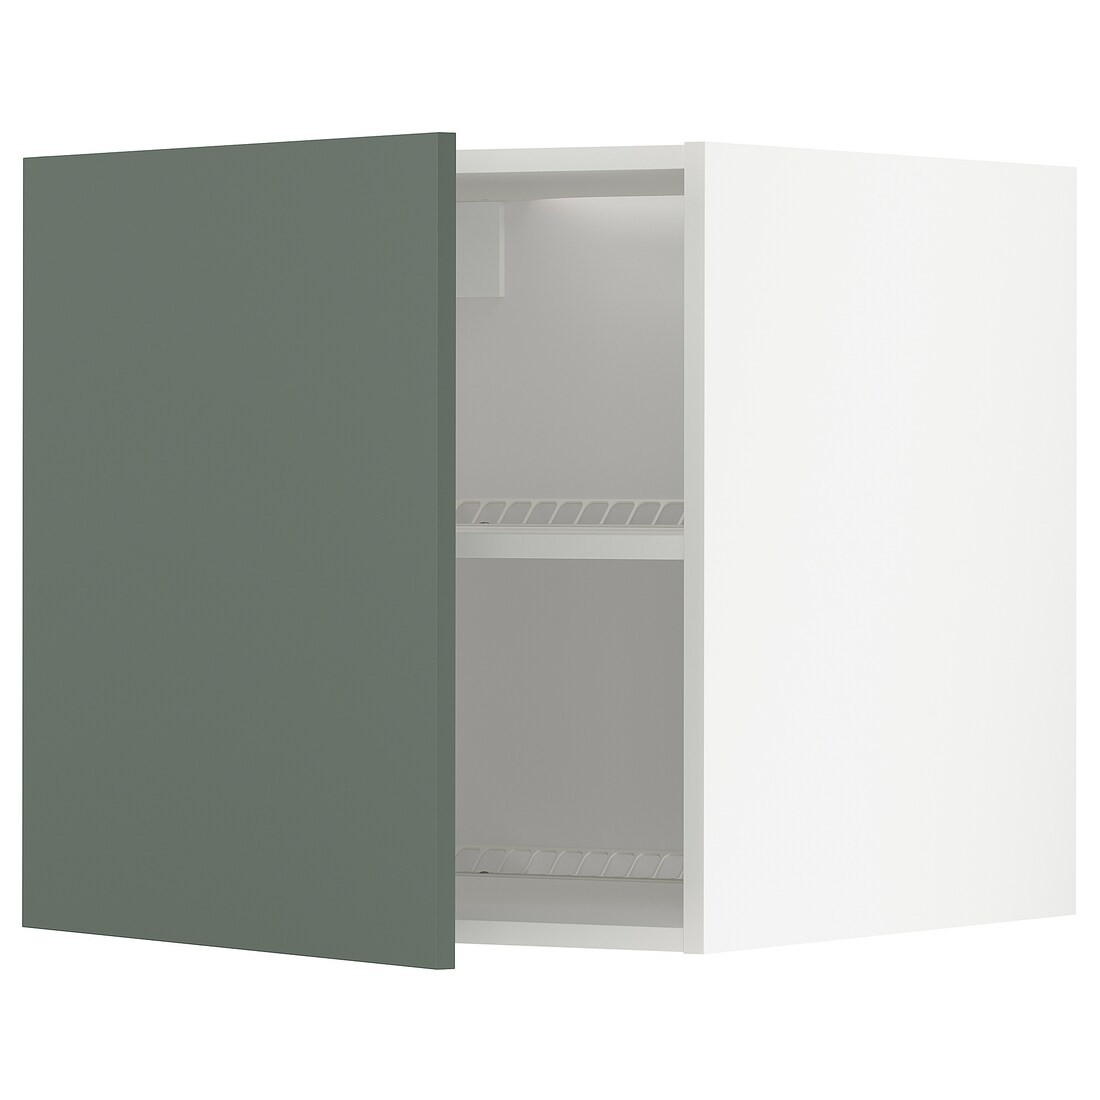 METOD МЕТОД Верхний шкаф для холодильника / морозильника, белый / Bodarp серо-зеленый, 60x60 см